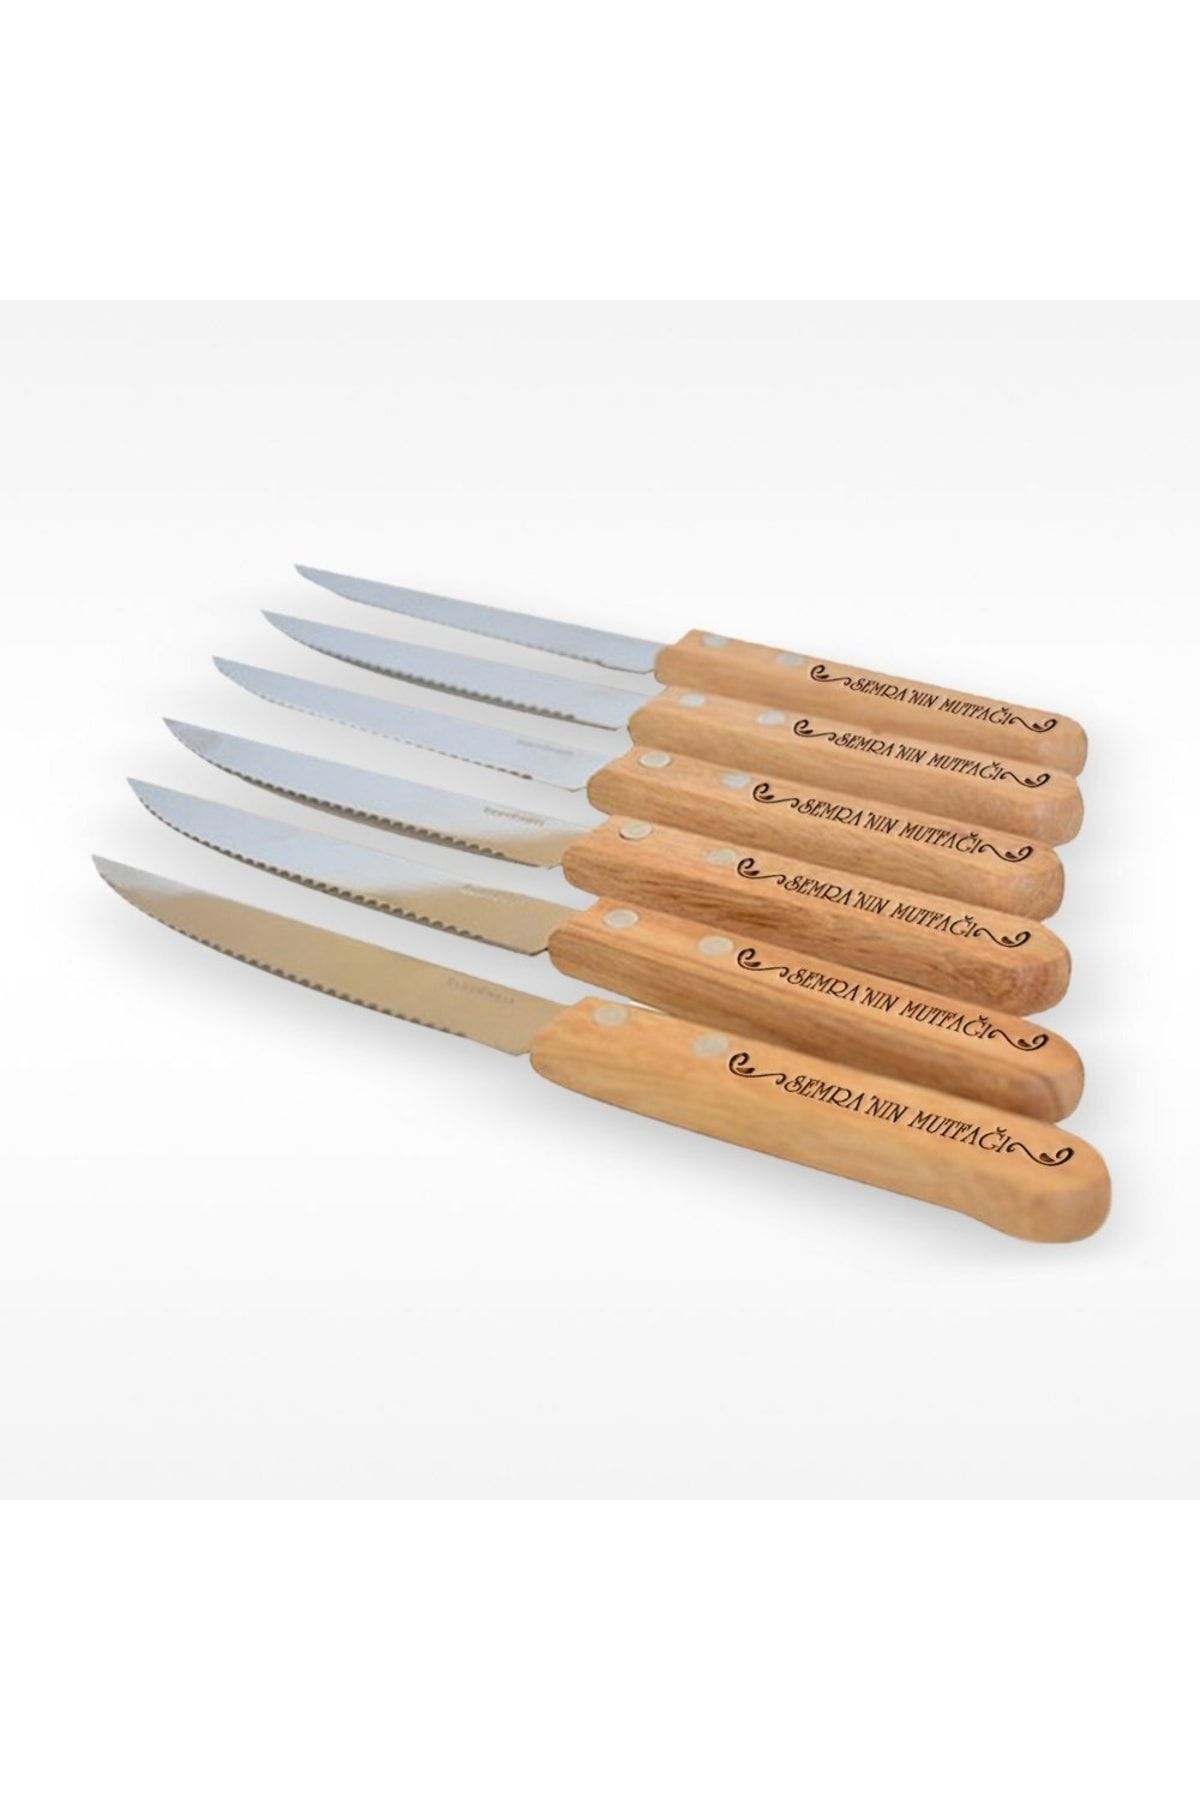 BK Kişiye Özel Bambu 6'lı Steak Bıçak Seti